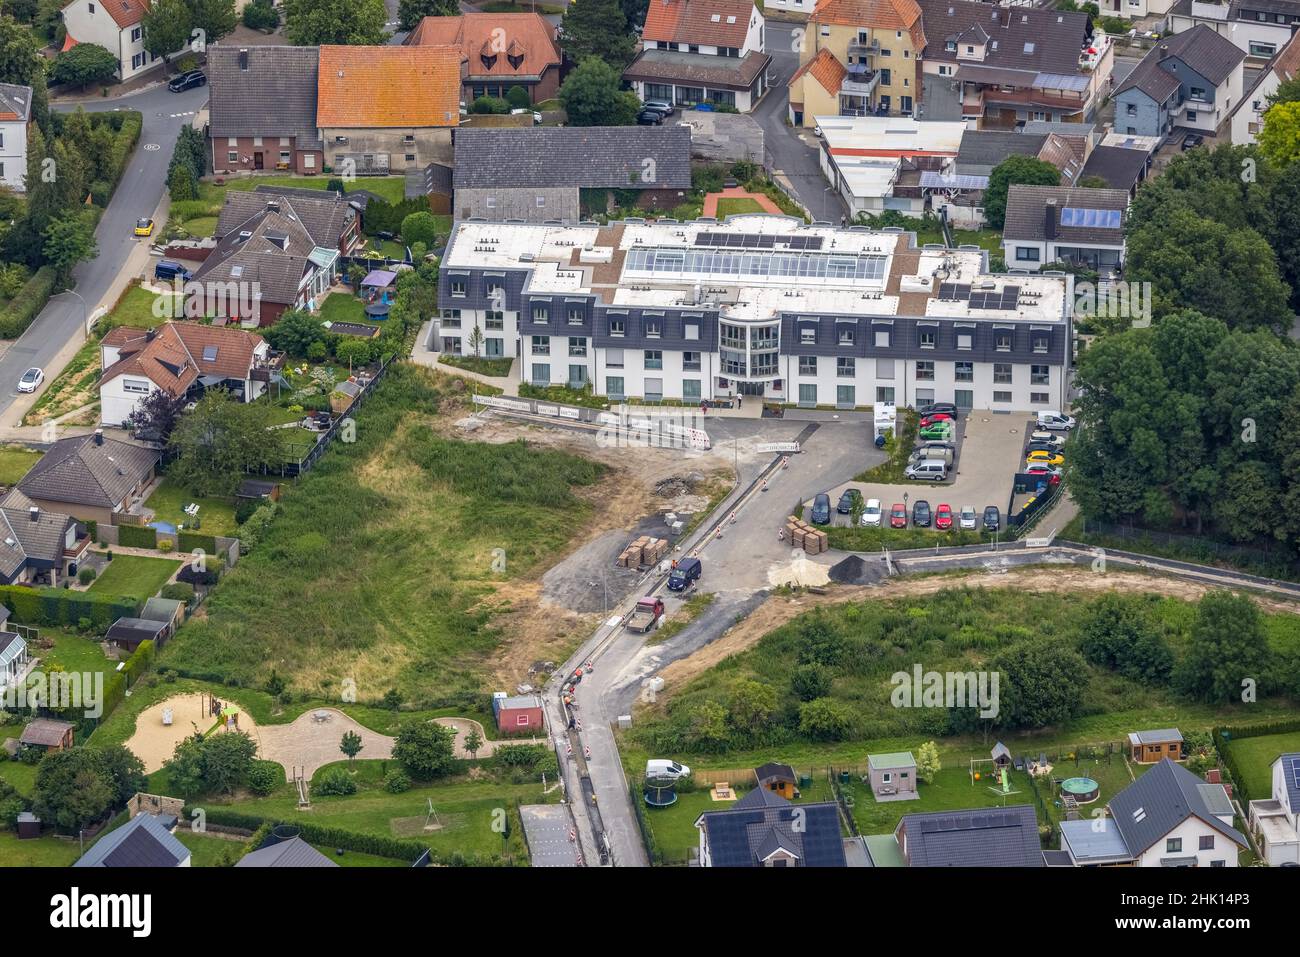 Vista aerea, cantiere presso la casa di cura Haus am Hellweg, Hemmerde, Unna, zona della Ruhr, Renania settentrionale-Vestfalia, La Germania, la casa degli anziani, gli anziani Foto Stock